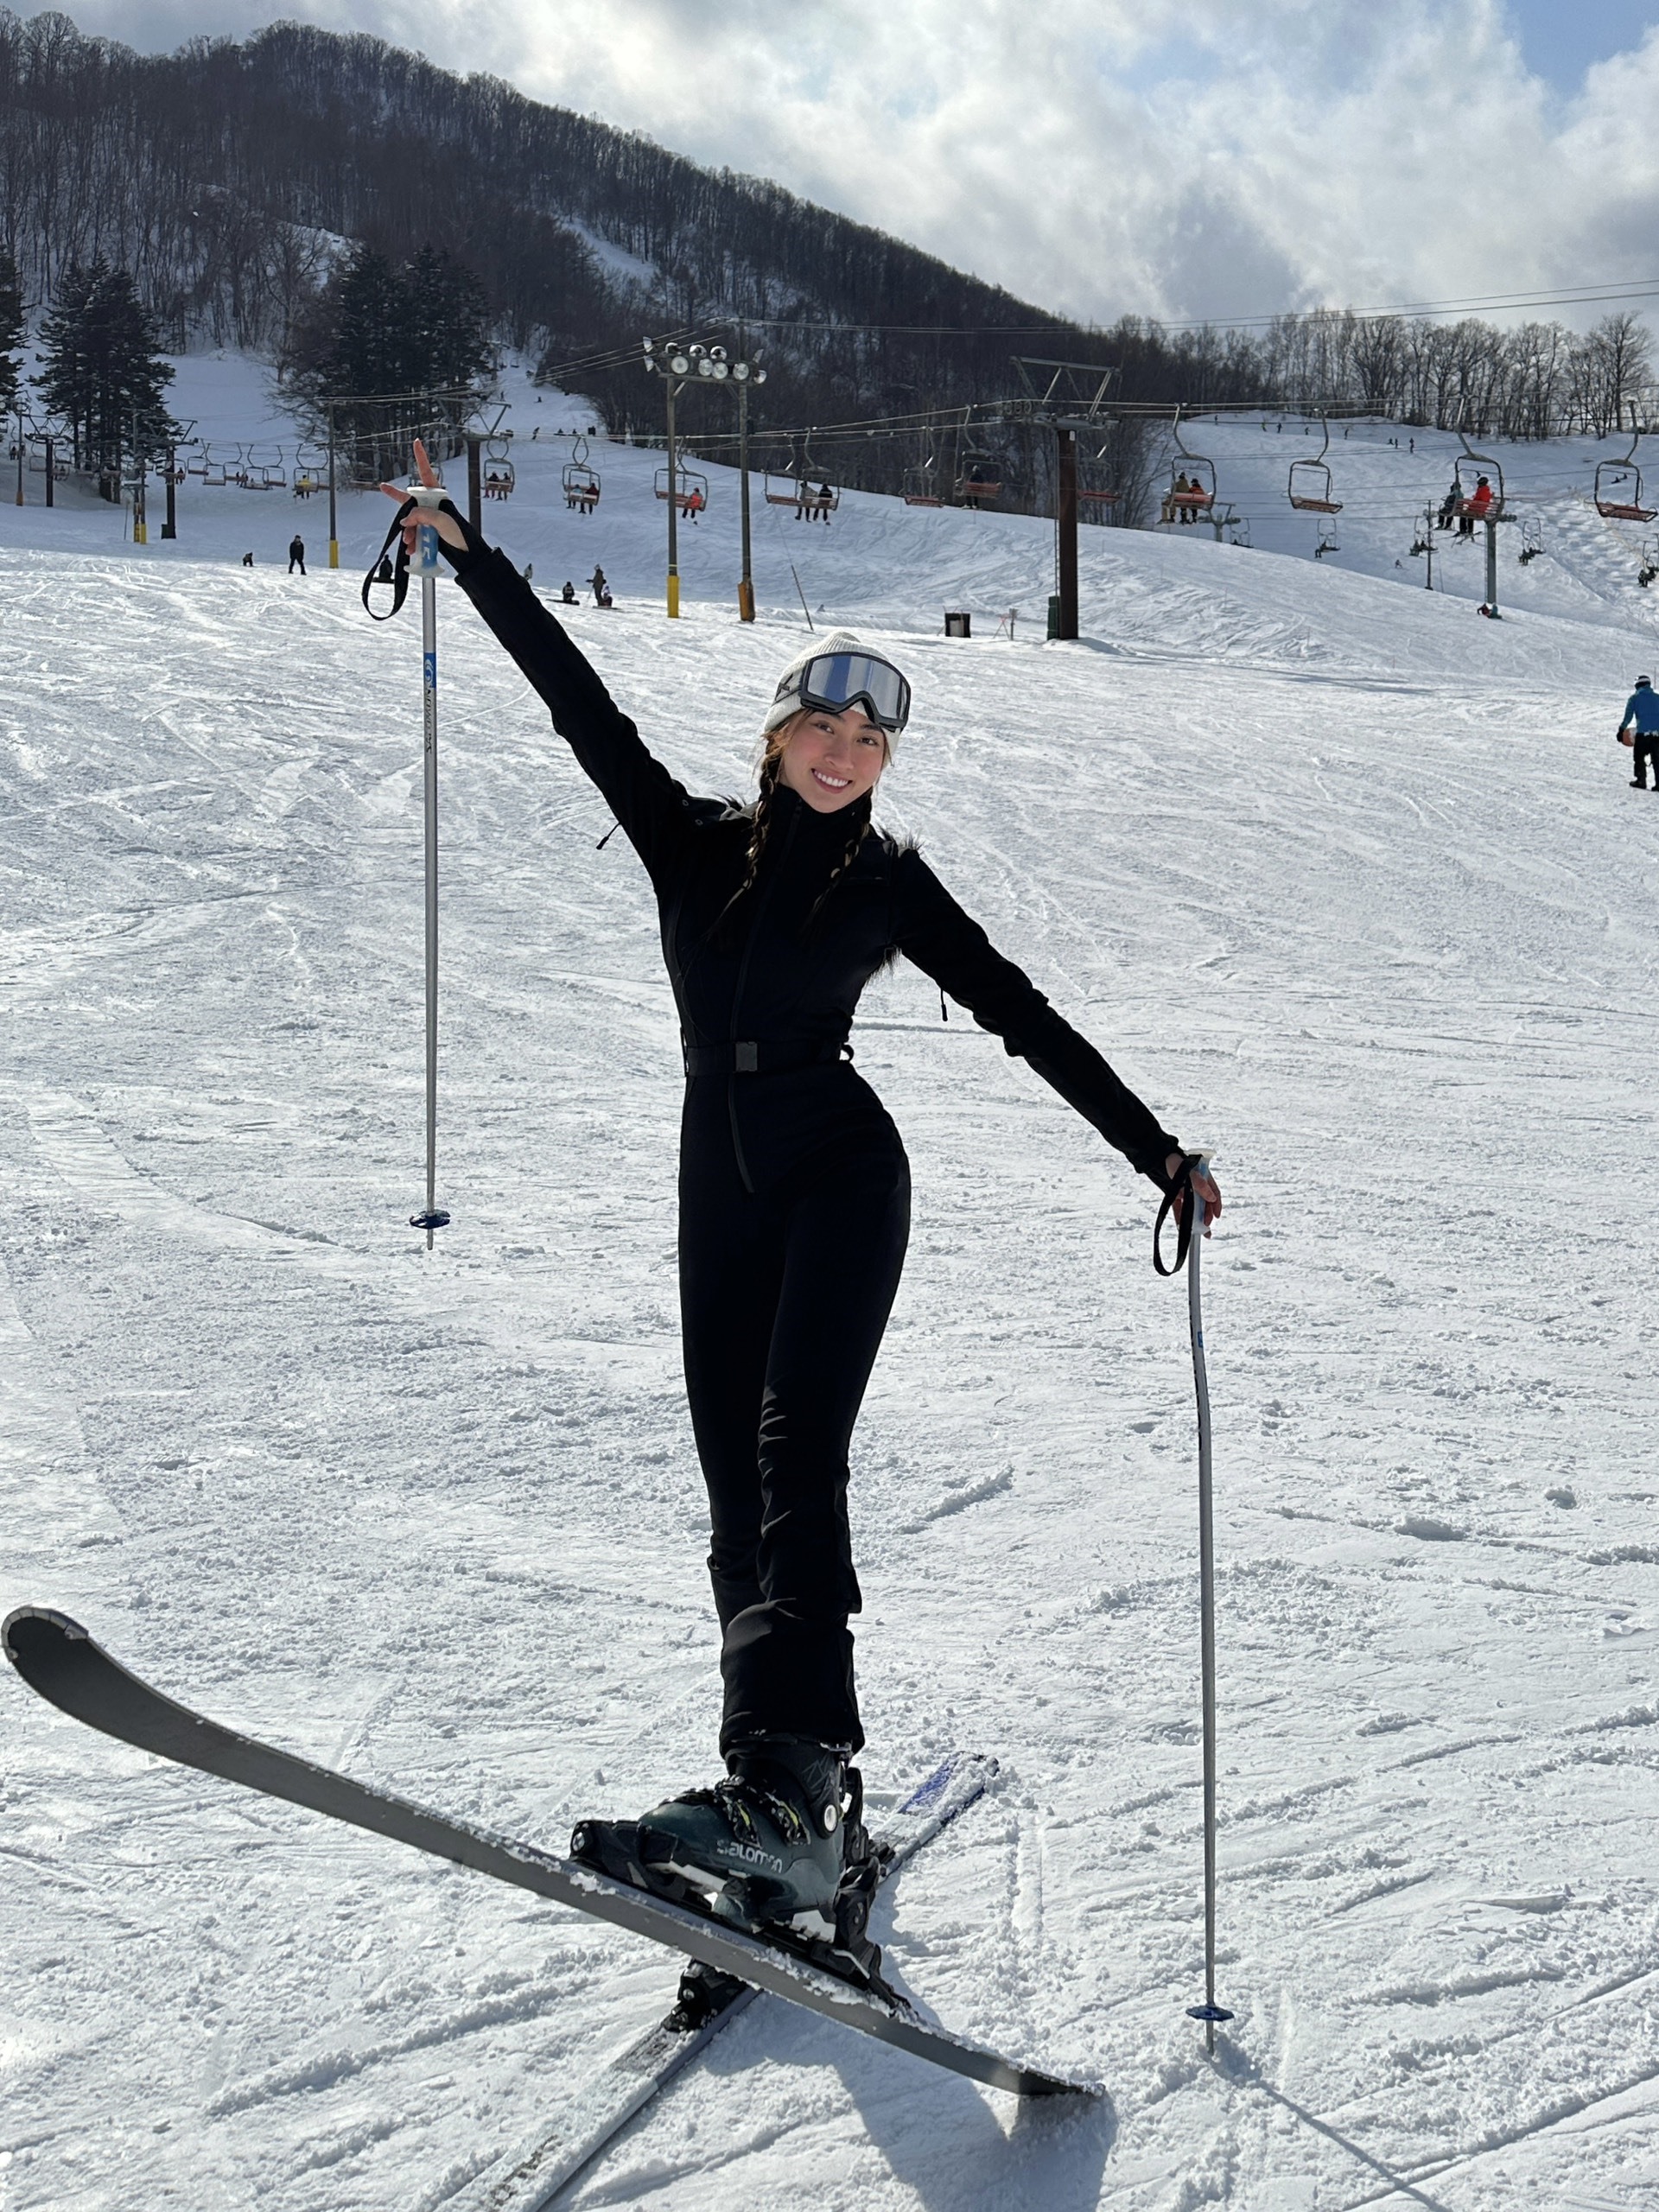 nh đã bắt đầu mùa trượt tuyết của cô và đem đến những kiểu dáng ấn tượng từ bộ áo liền quần đen sang trọng, phong cách.